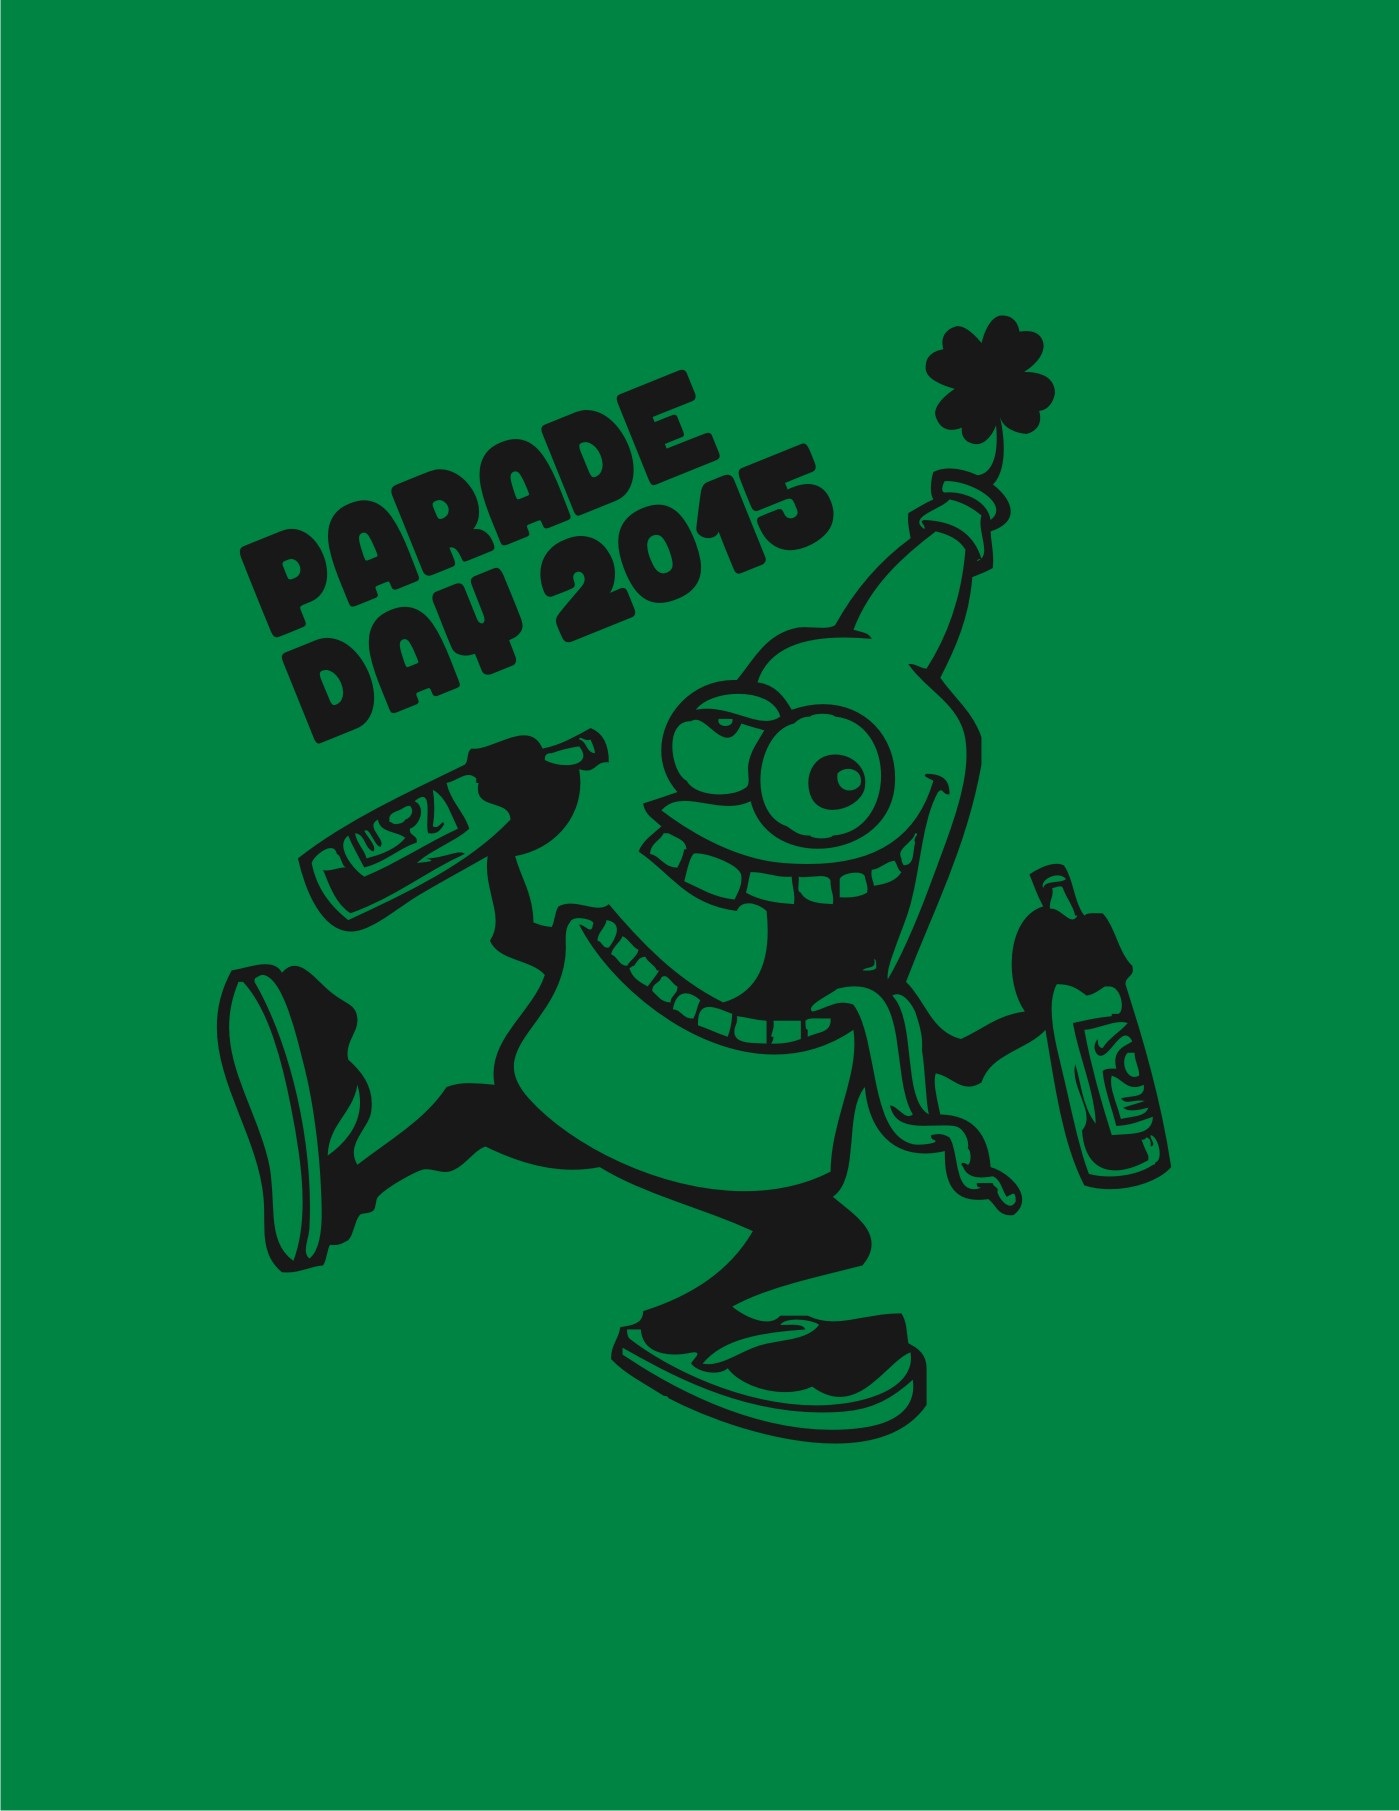 Parade Day St. Patricks Day Cartoon